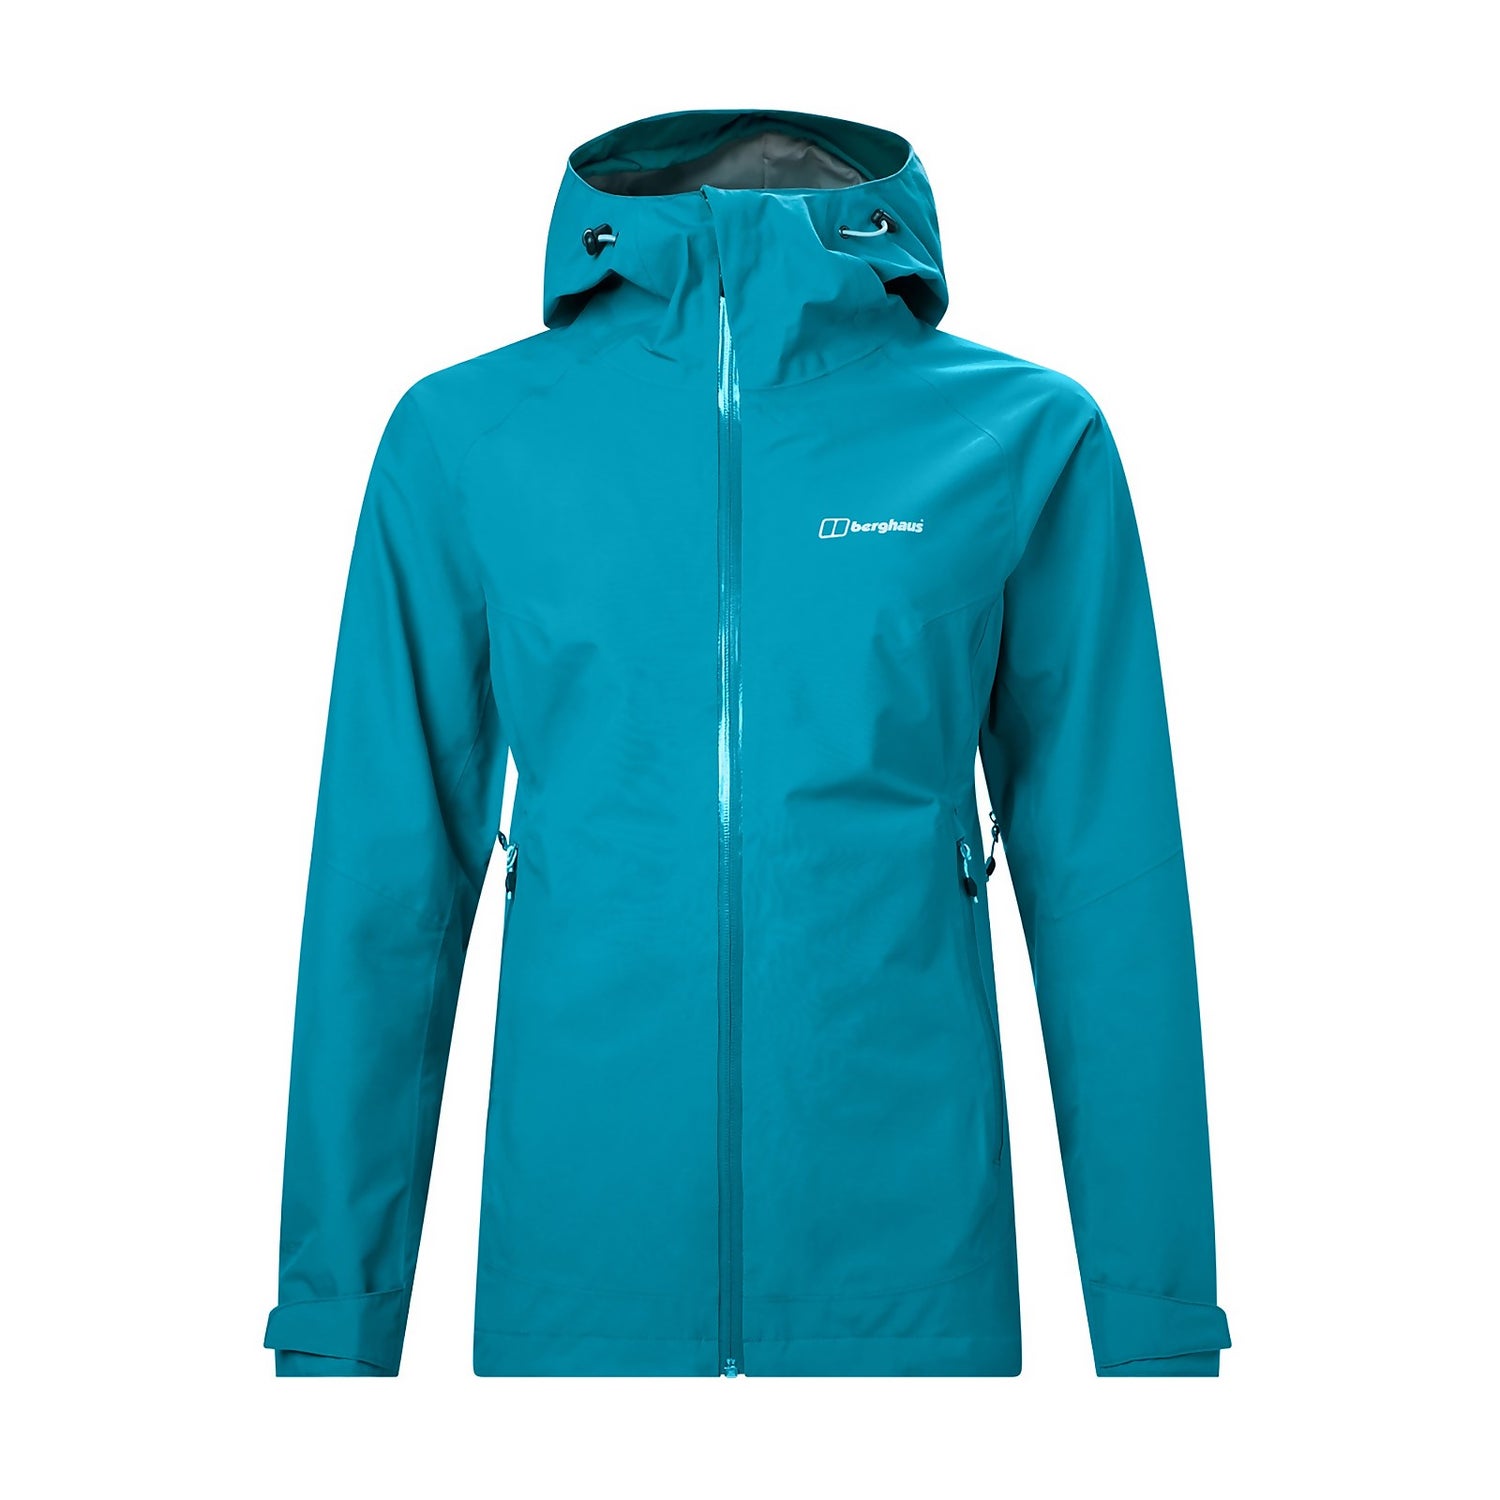 Women's Ridgemaster Waterproof Goretex Jacket - Turquoise